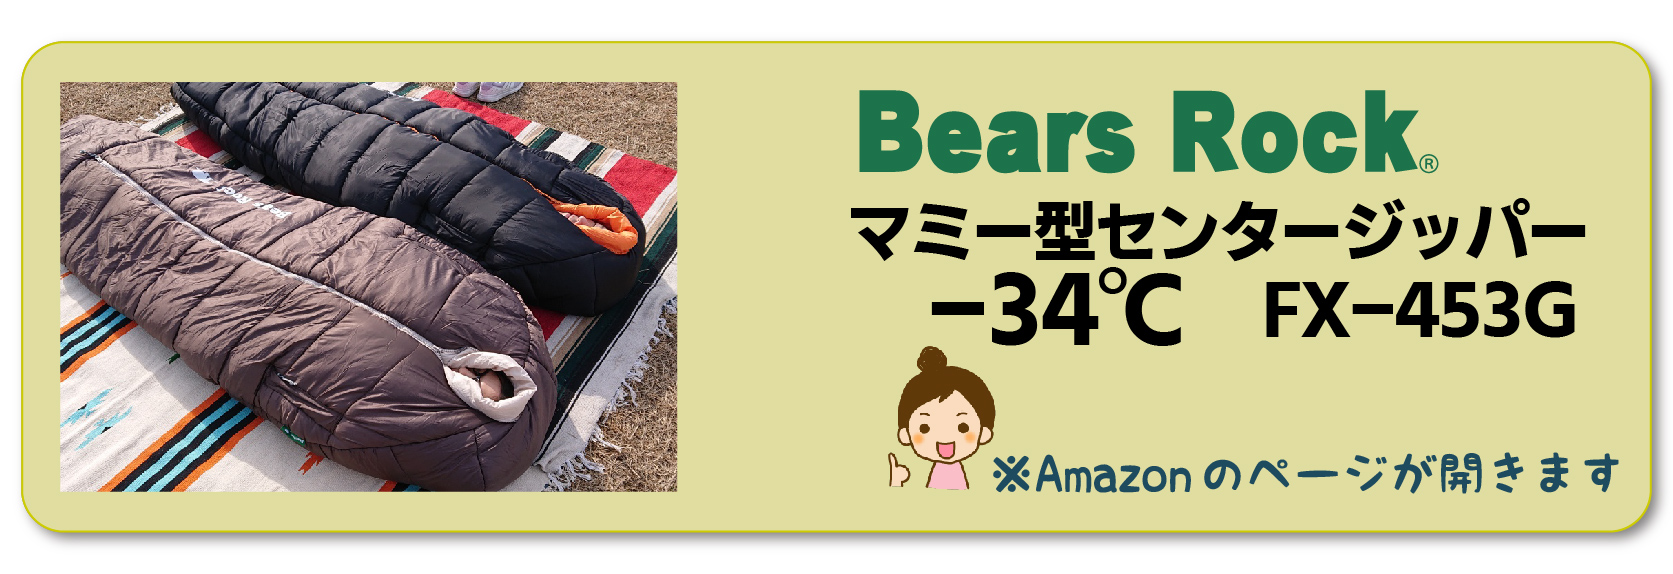 Amazon商品リンク_-34℃ マミー型センタージッパー